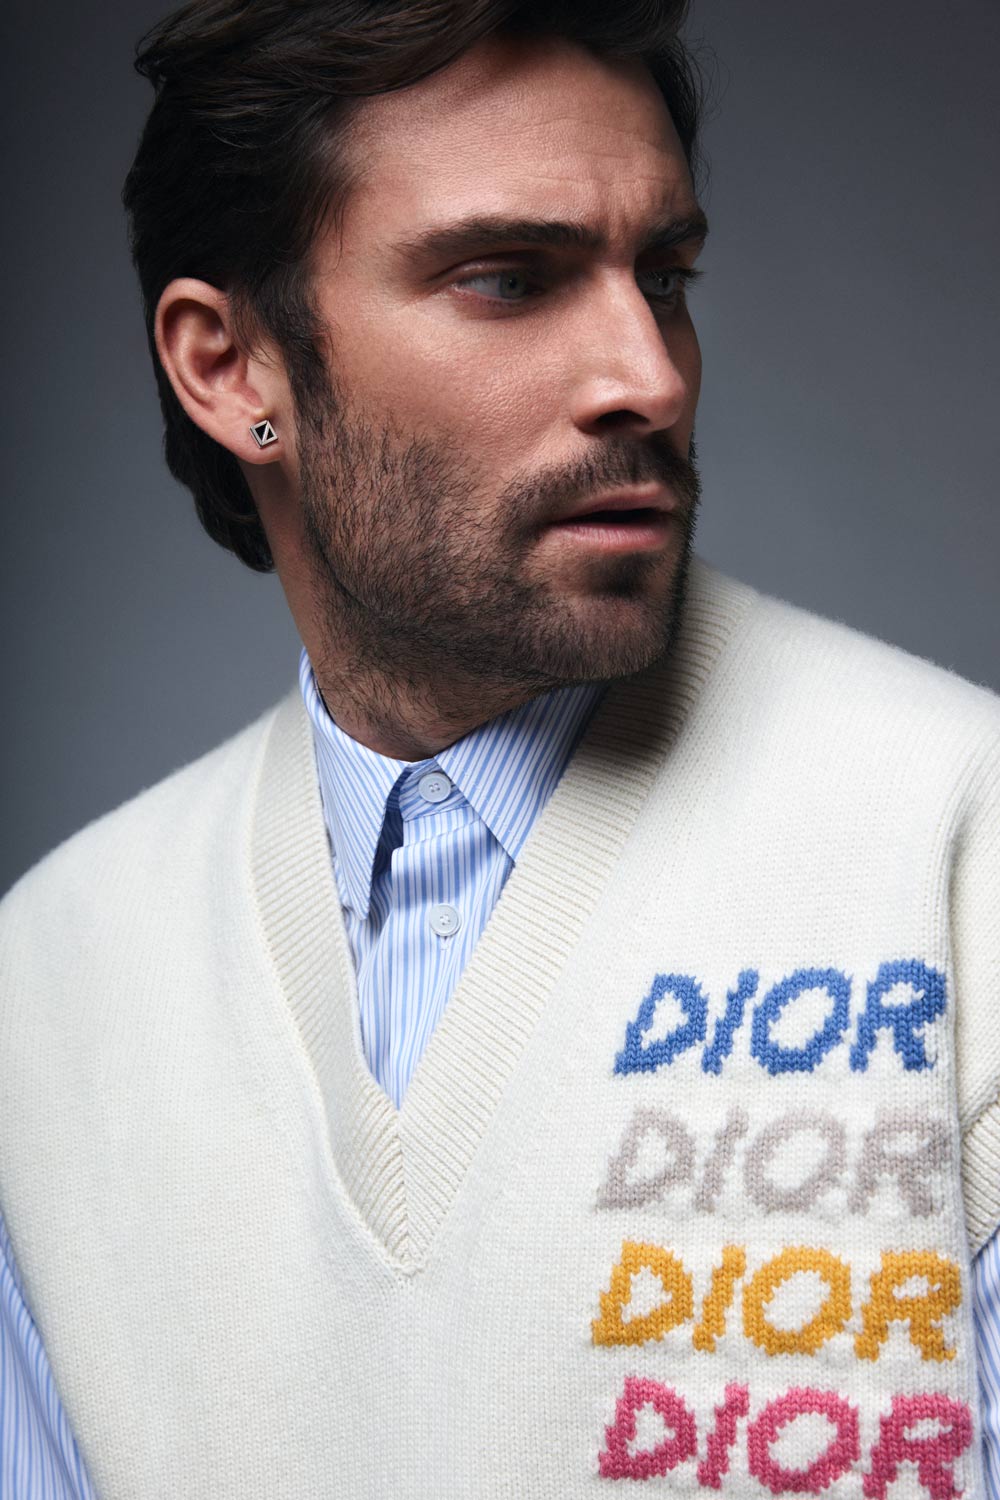 fernando guallar actor español vestido de Dior Men